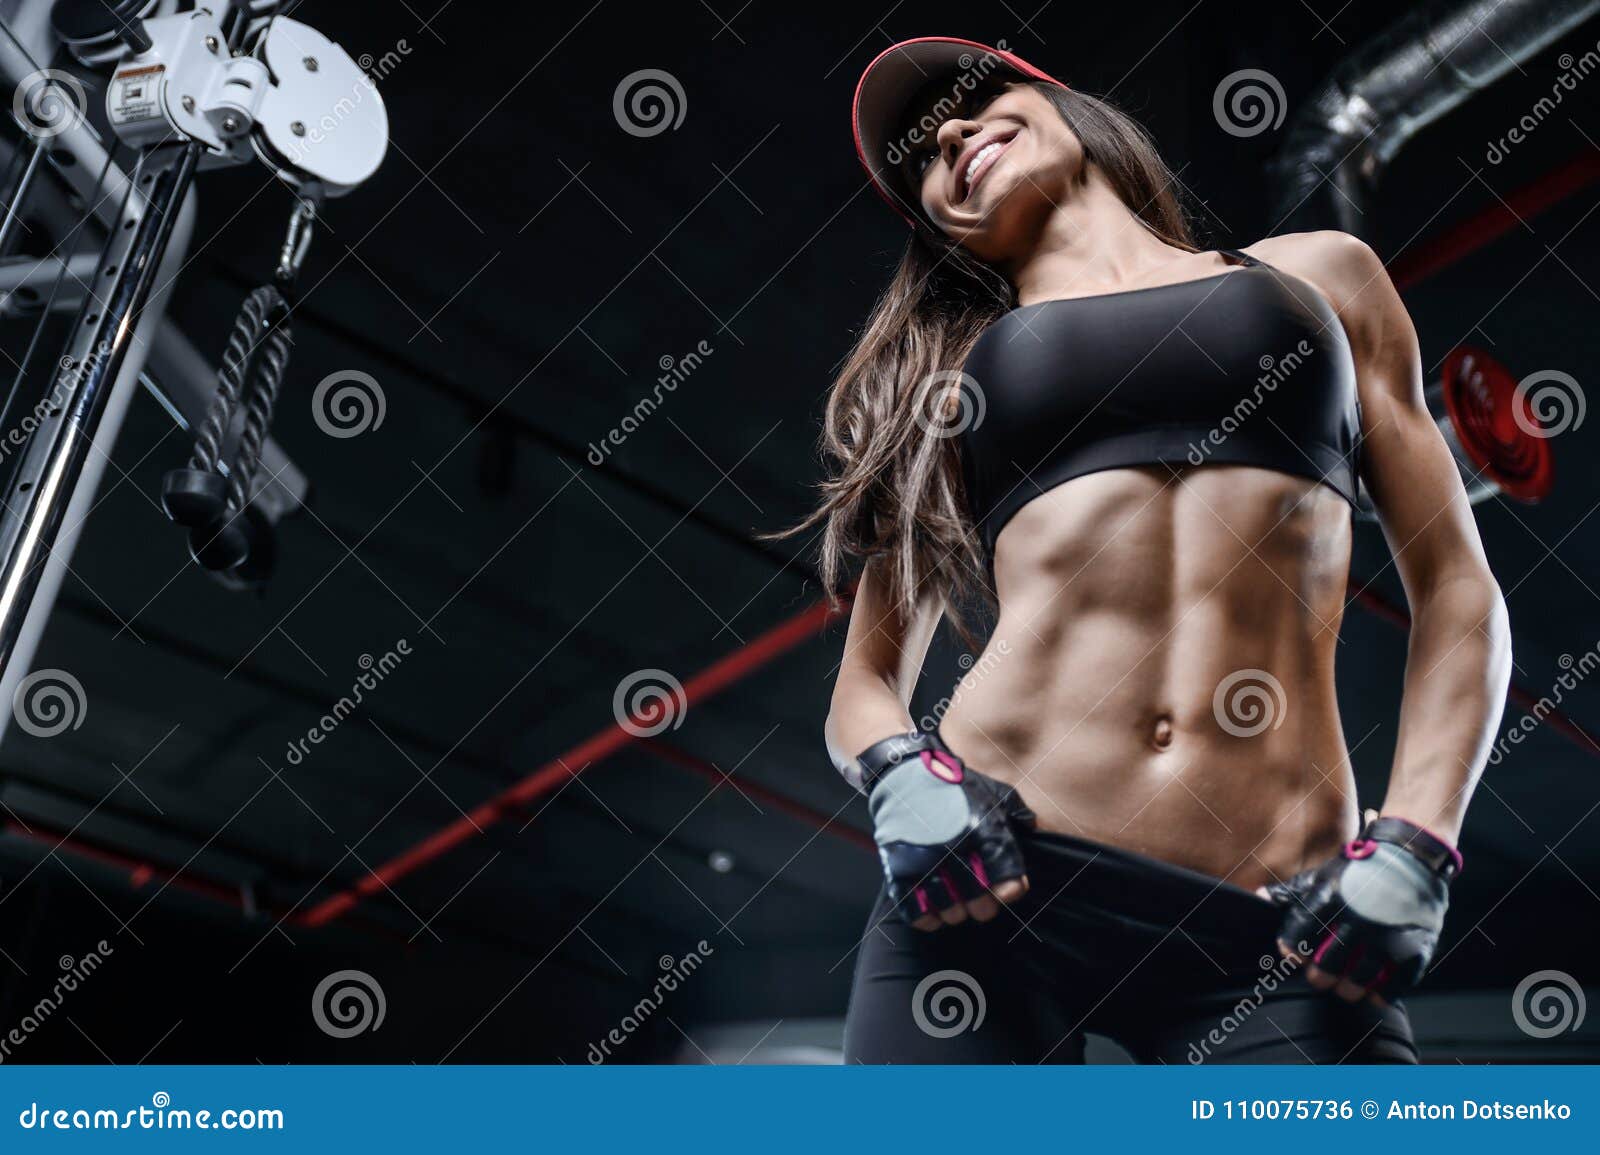 Female muscle , Six pack of Women , Workout ,,  Fitness models female,  Muscle women, Body building women